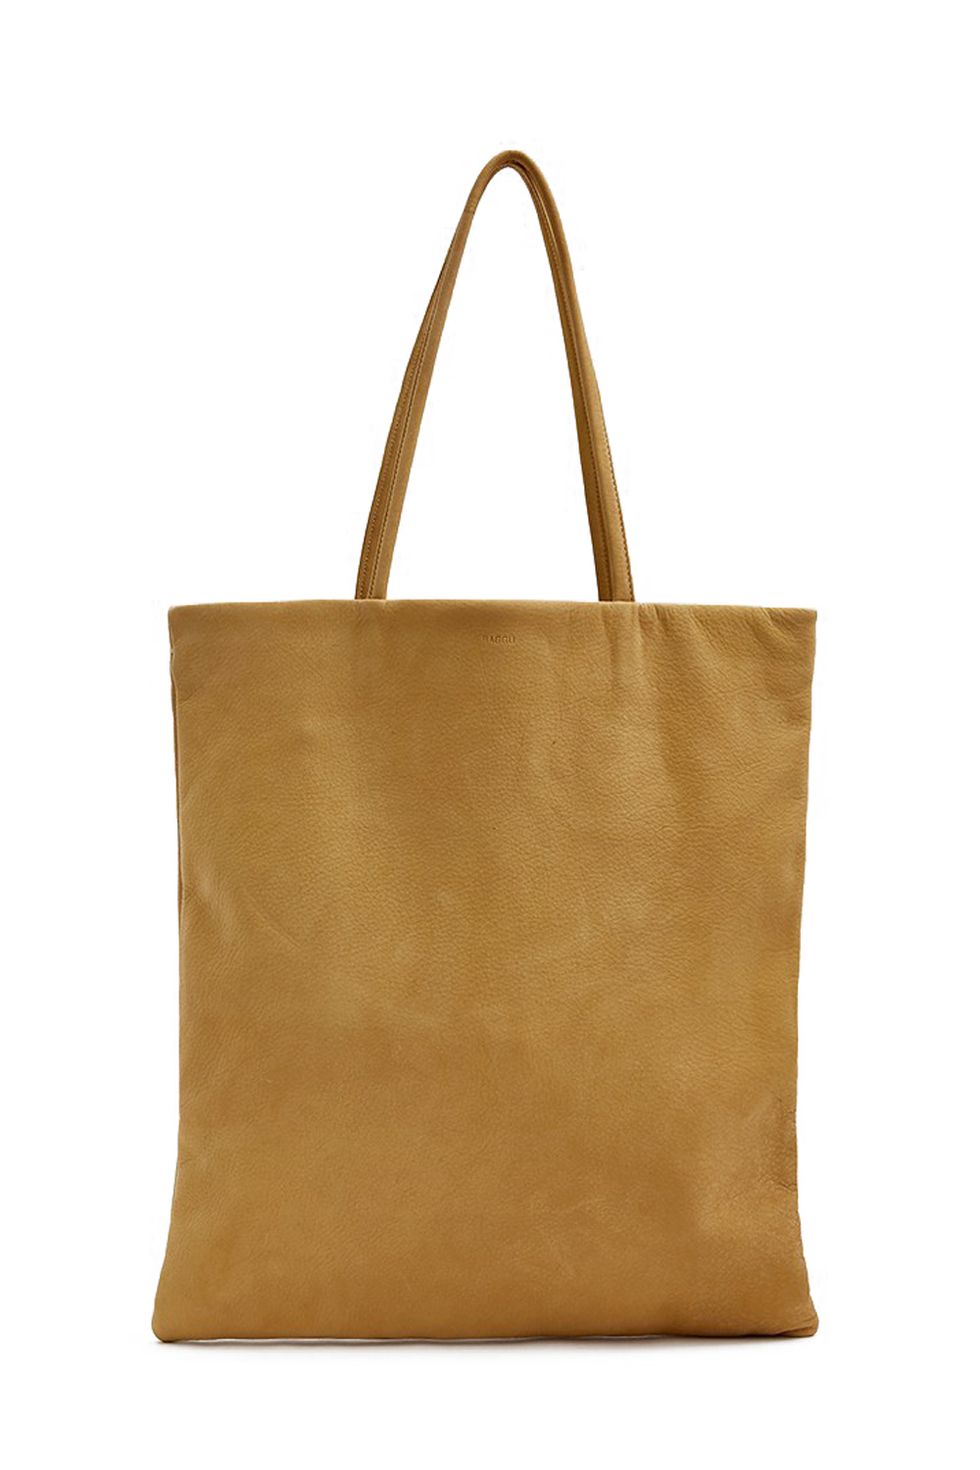 10 ტრენდული ჩანთა თქვენი „ნოუთ ბუქისთვის“ - ყველაზე მოდური გოგონების არჩევანი